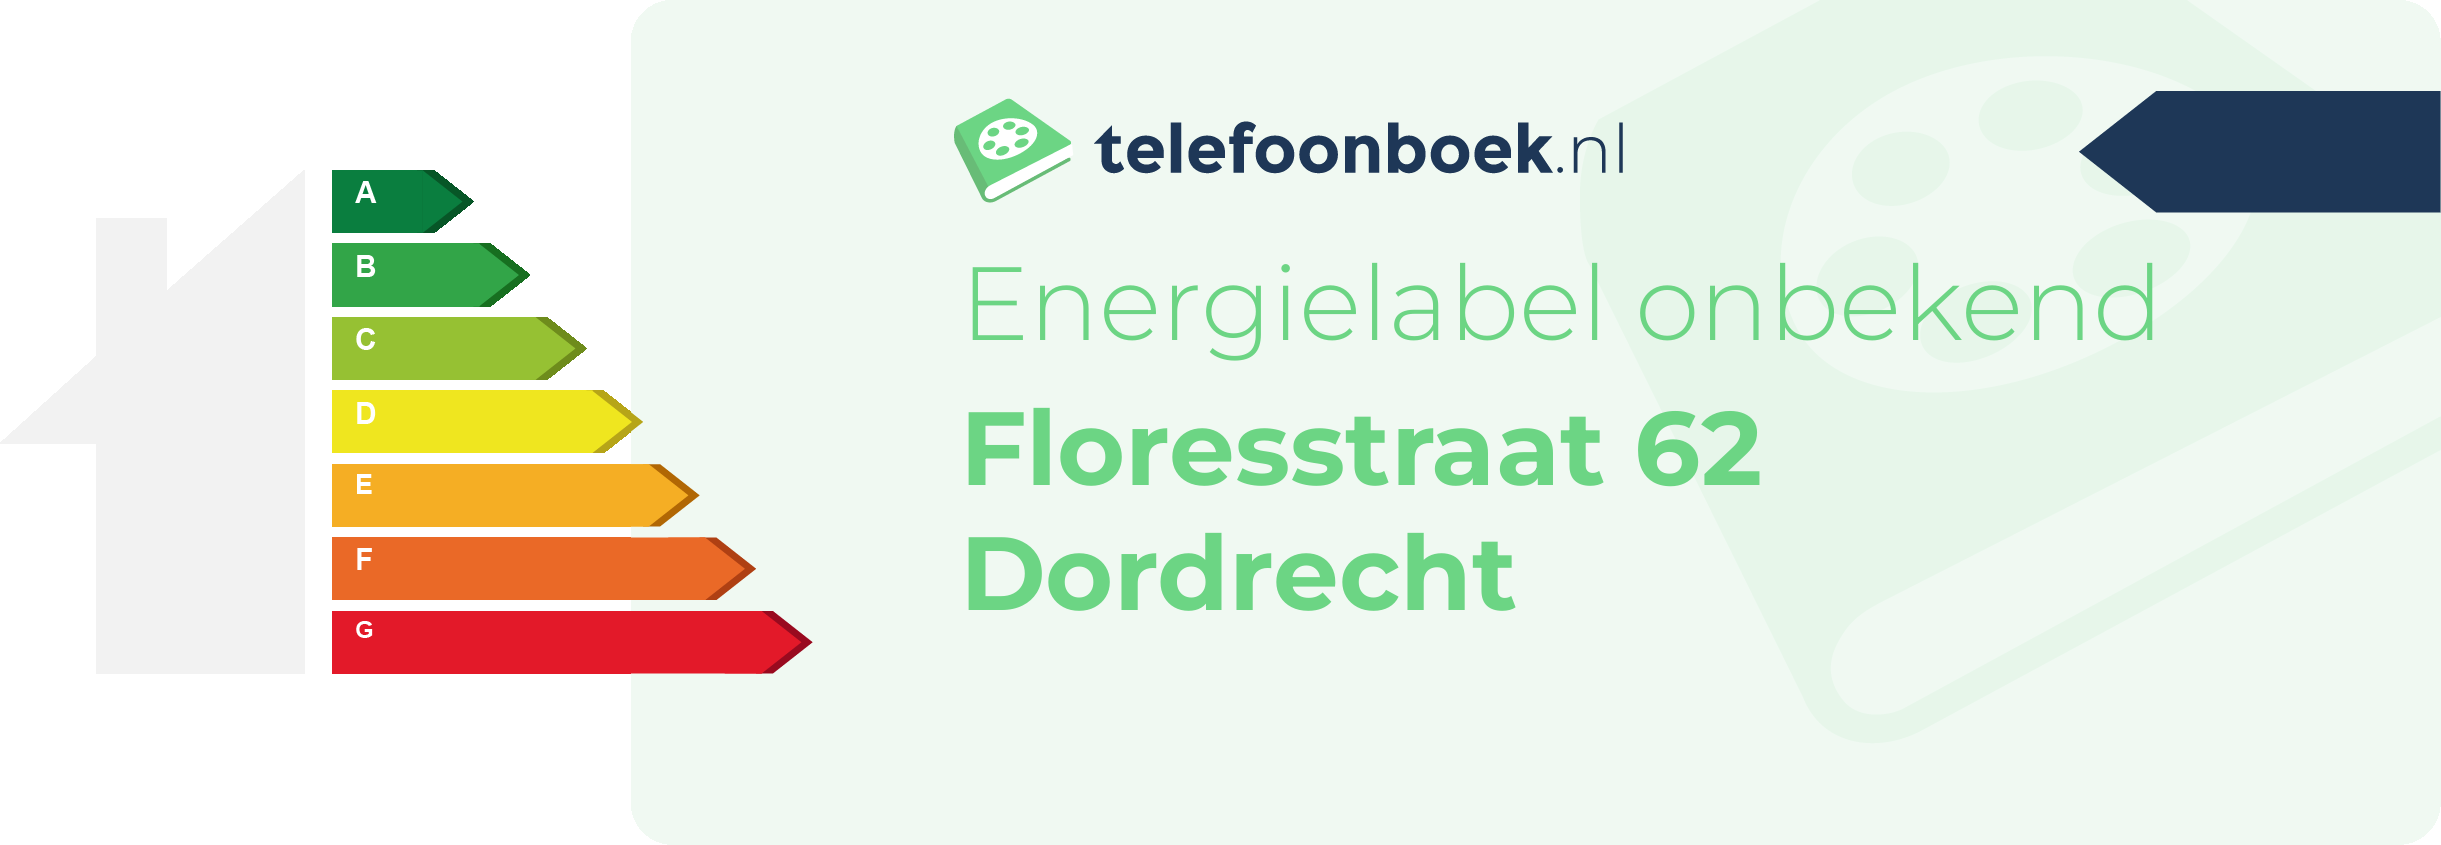 Energielabel Floresstraat 62 Dordrecht